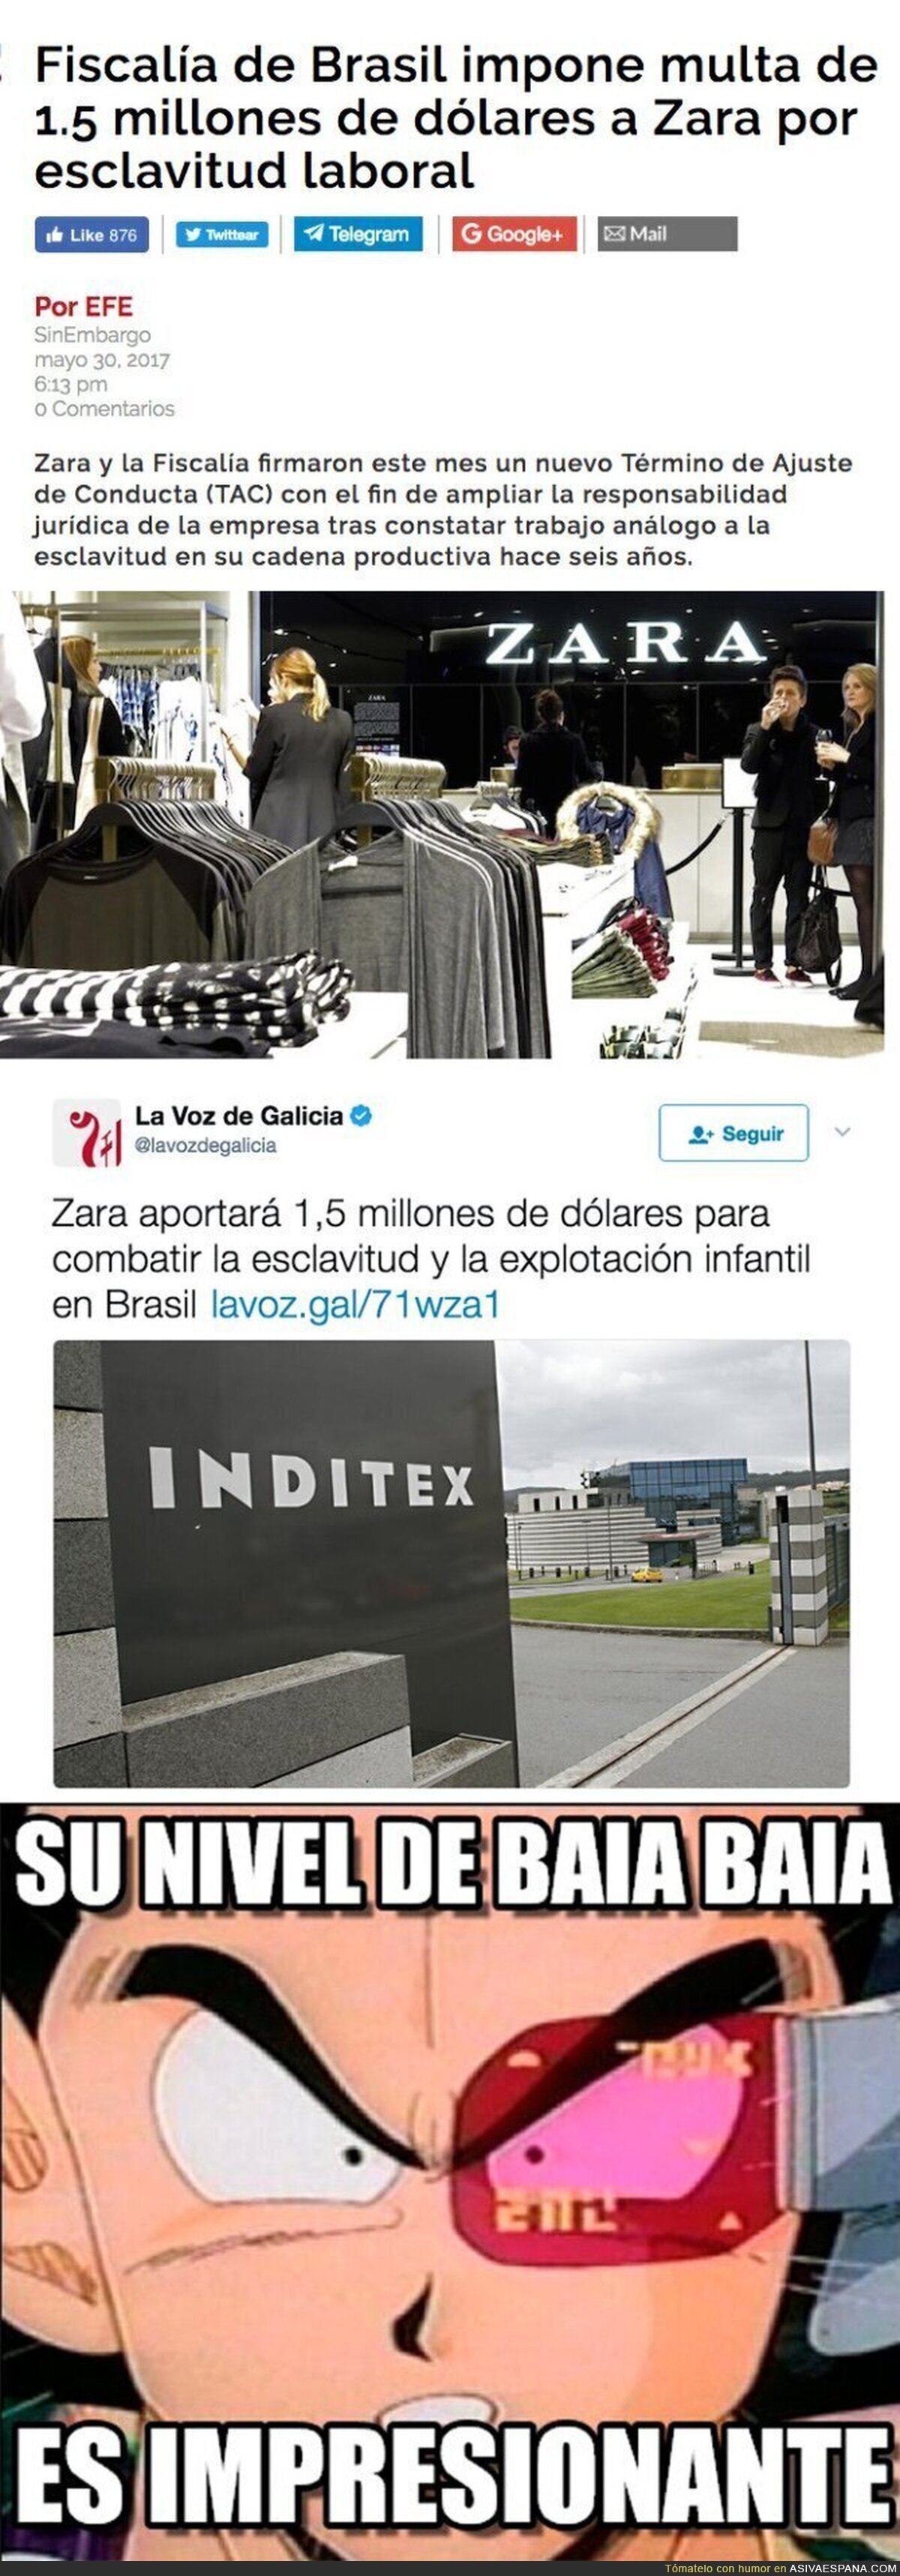 'La Voz de Galicia' manipula un titular sobre ZARA y una multa en Brasil sobre explotación laboral